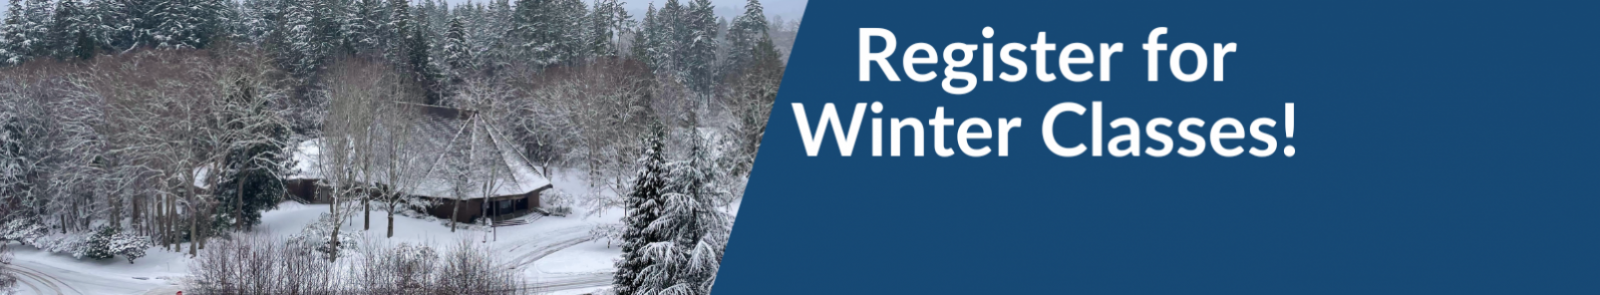 Register for Winter Classes